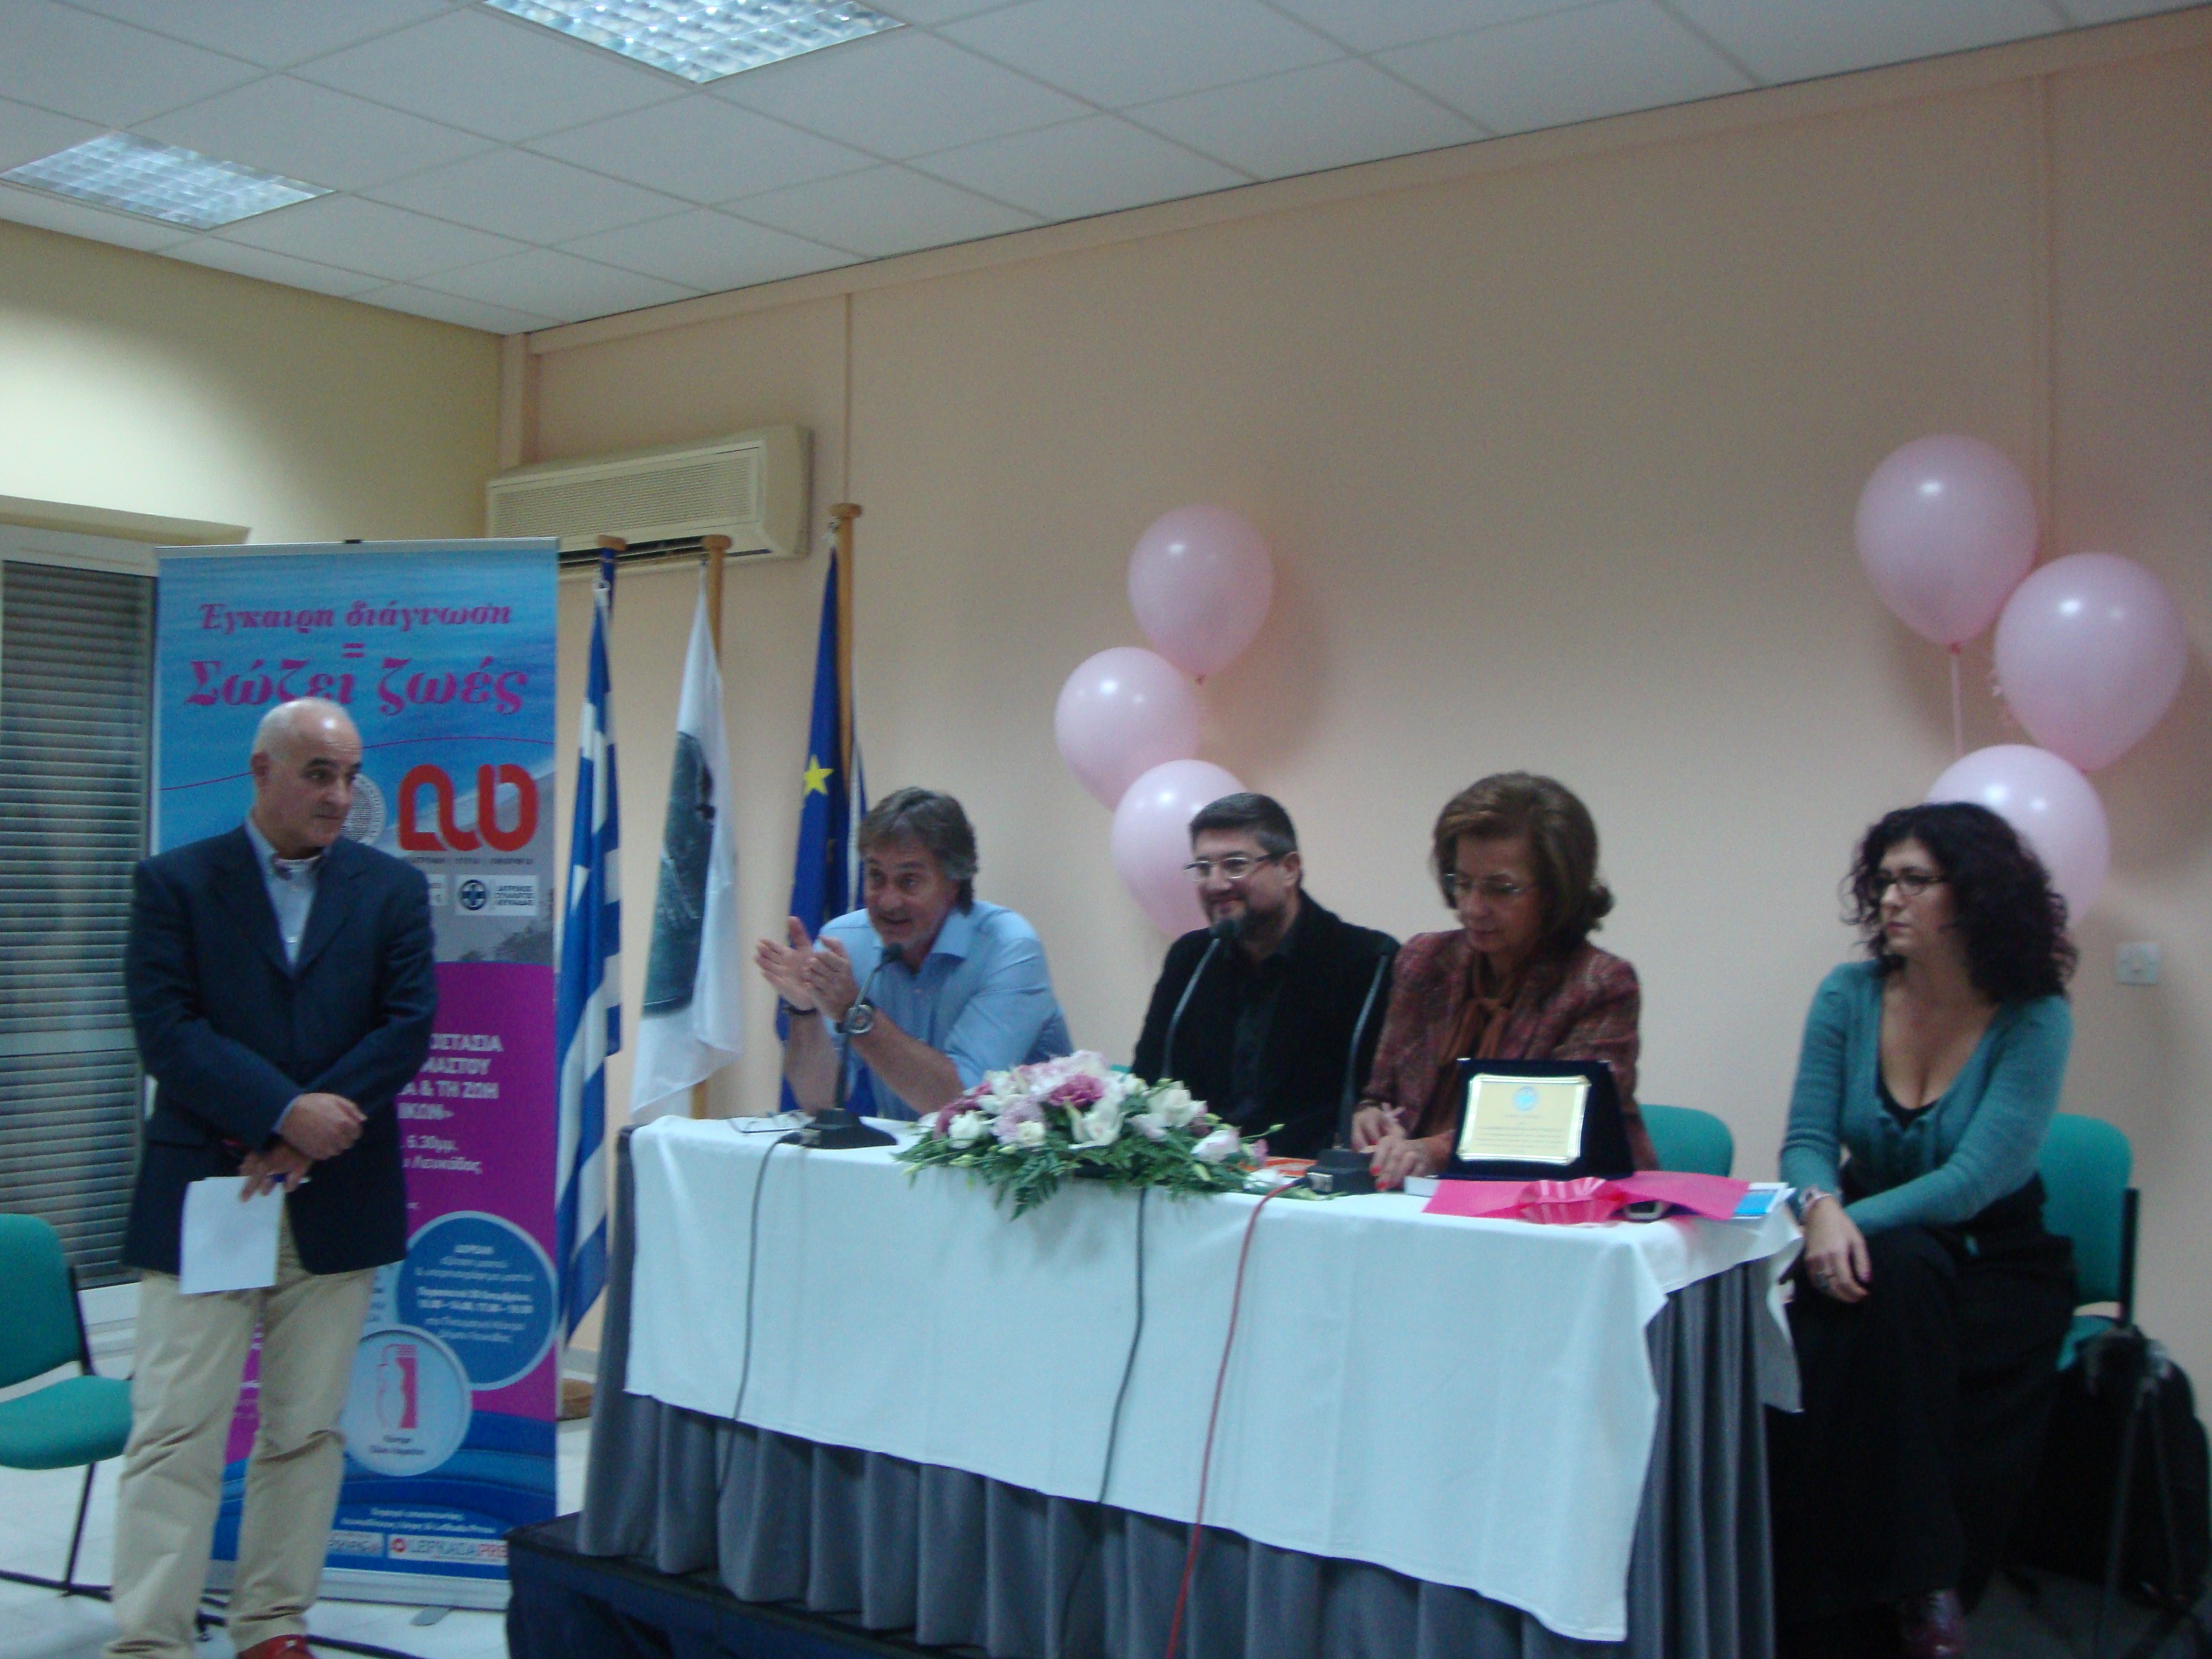 Με μεγάλη επιτυχία ολοκληρώθηκαν οι διήμερες εκδηλώσεις της Ελληνικής Εταιρείας Μαστολογίας στη Λευκάδα